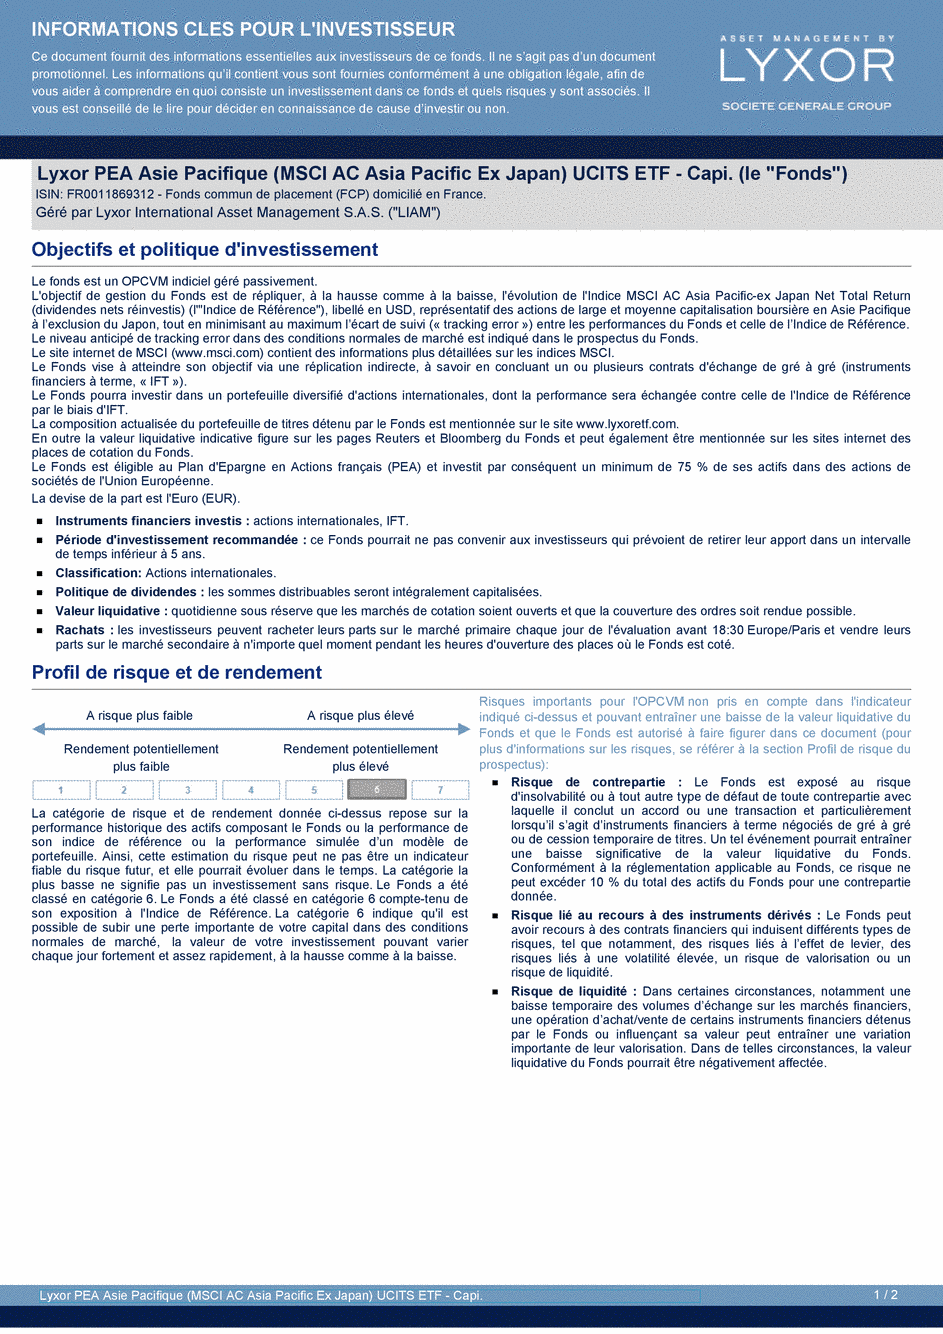 DICI Lyxor PEA Asie Pacifique (MSCI AC Asia Pacific Ex Japan) UCITS ETF - Capi. - 19/02/2021 - Français